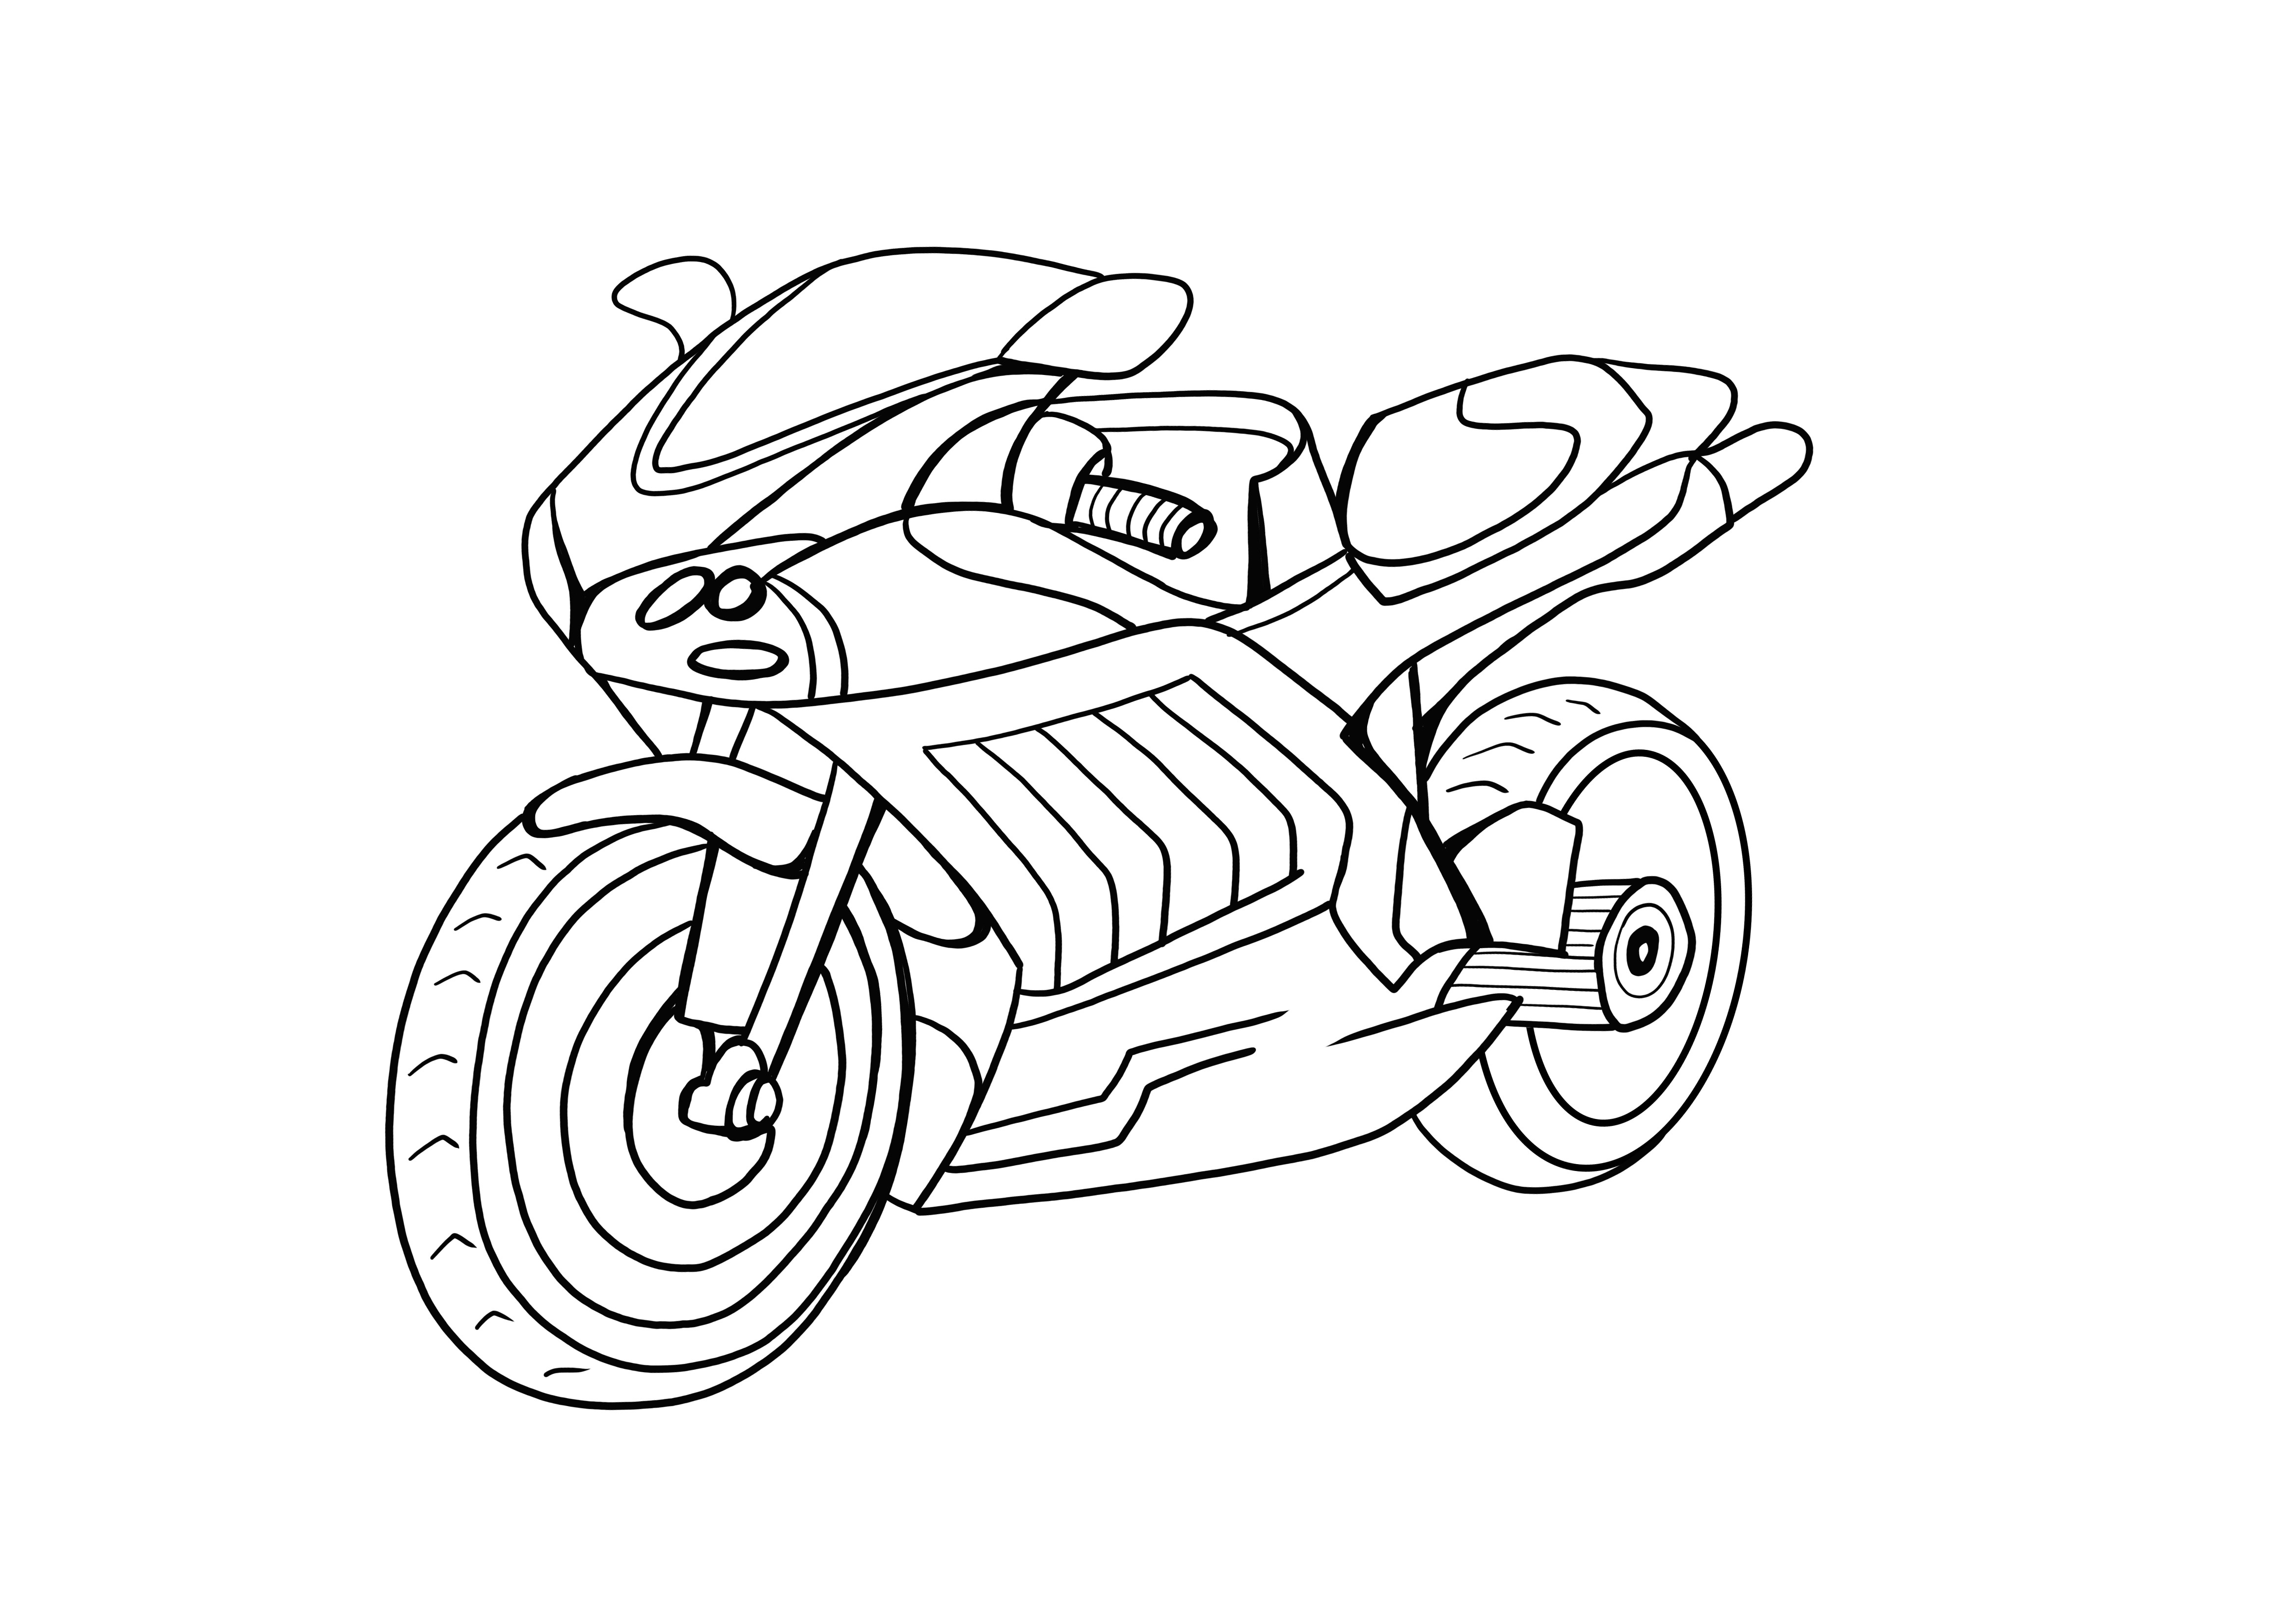 impresión gratuita de la página de la motocicleta